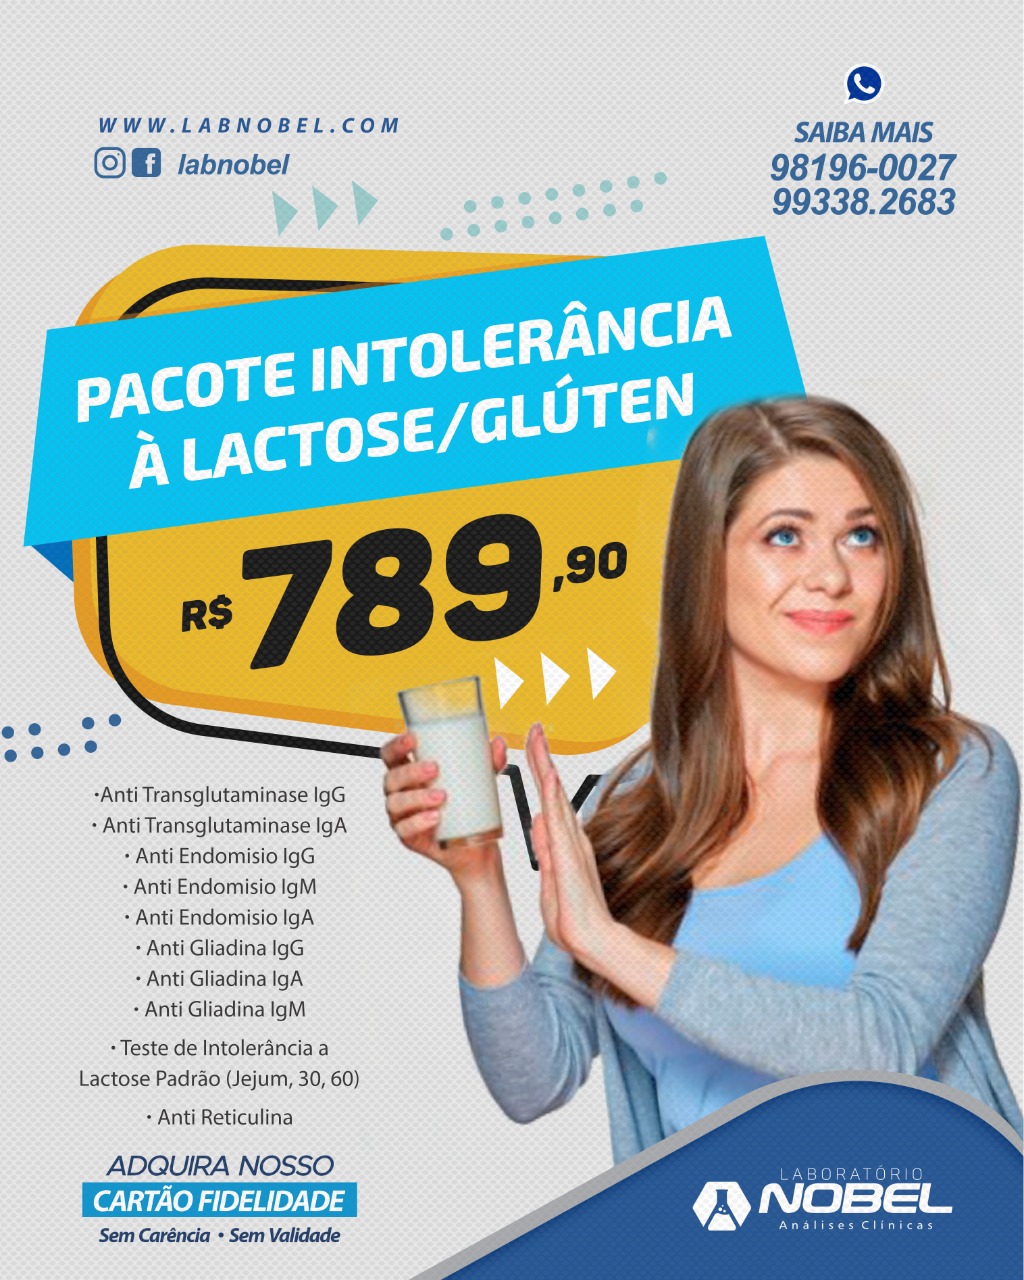 Pacote Intolerância a Lactose/Glúten